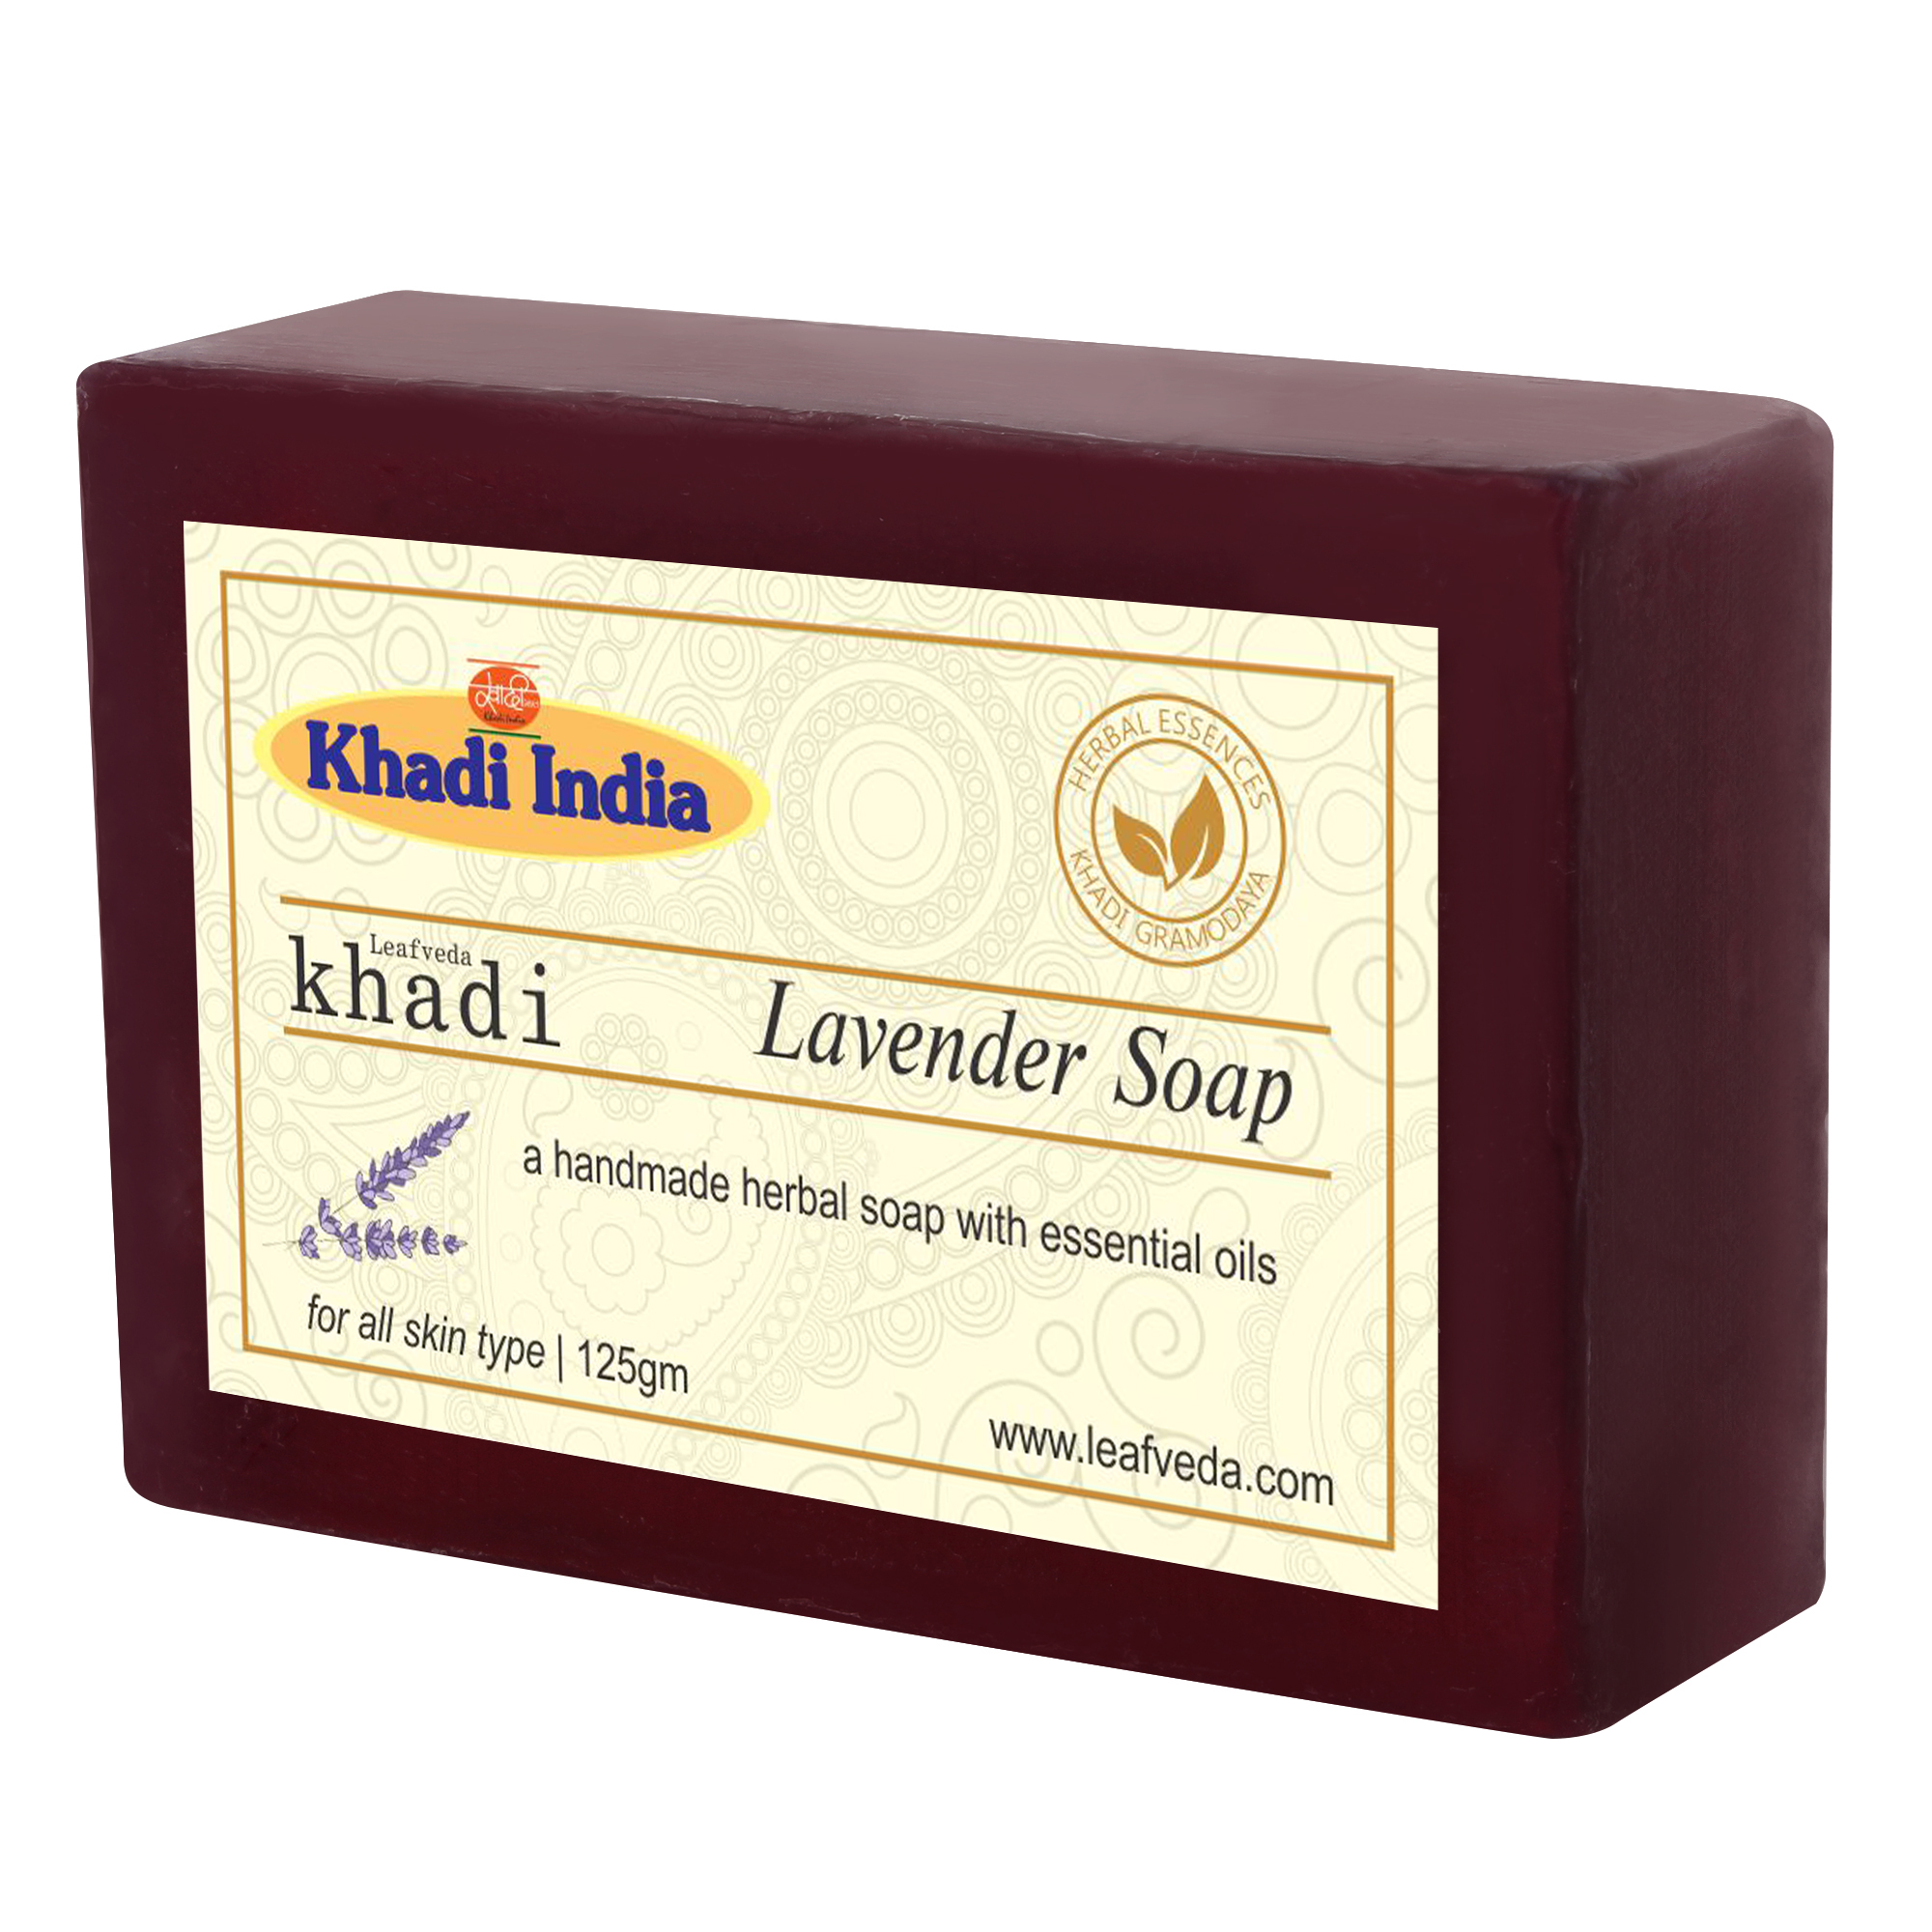 Buy Khadi Leafveda Lavender Soap at Best Price Online